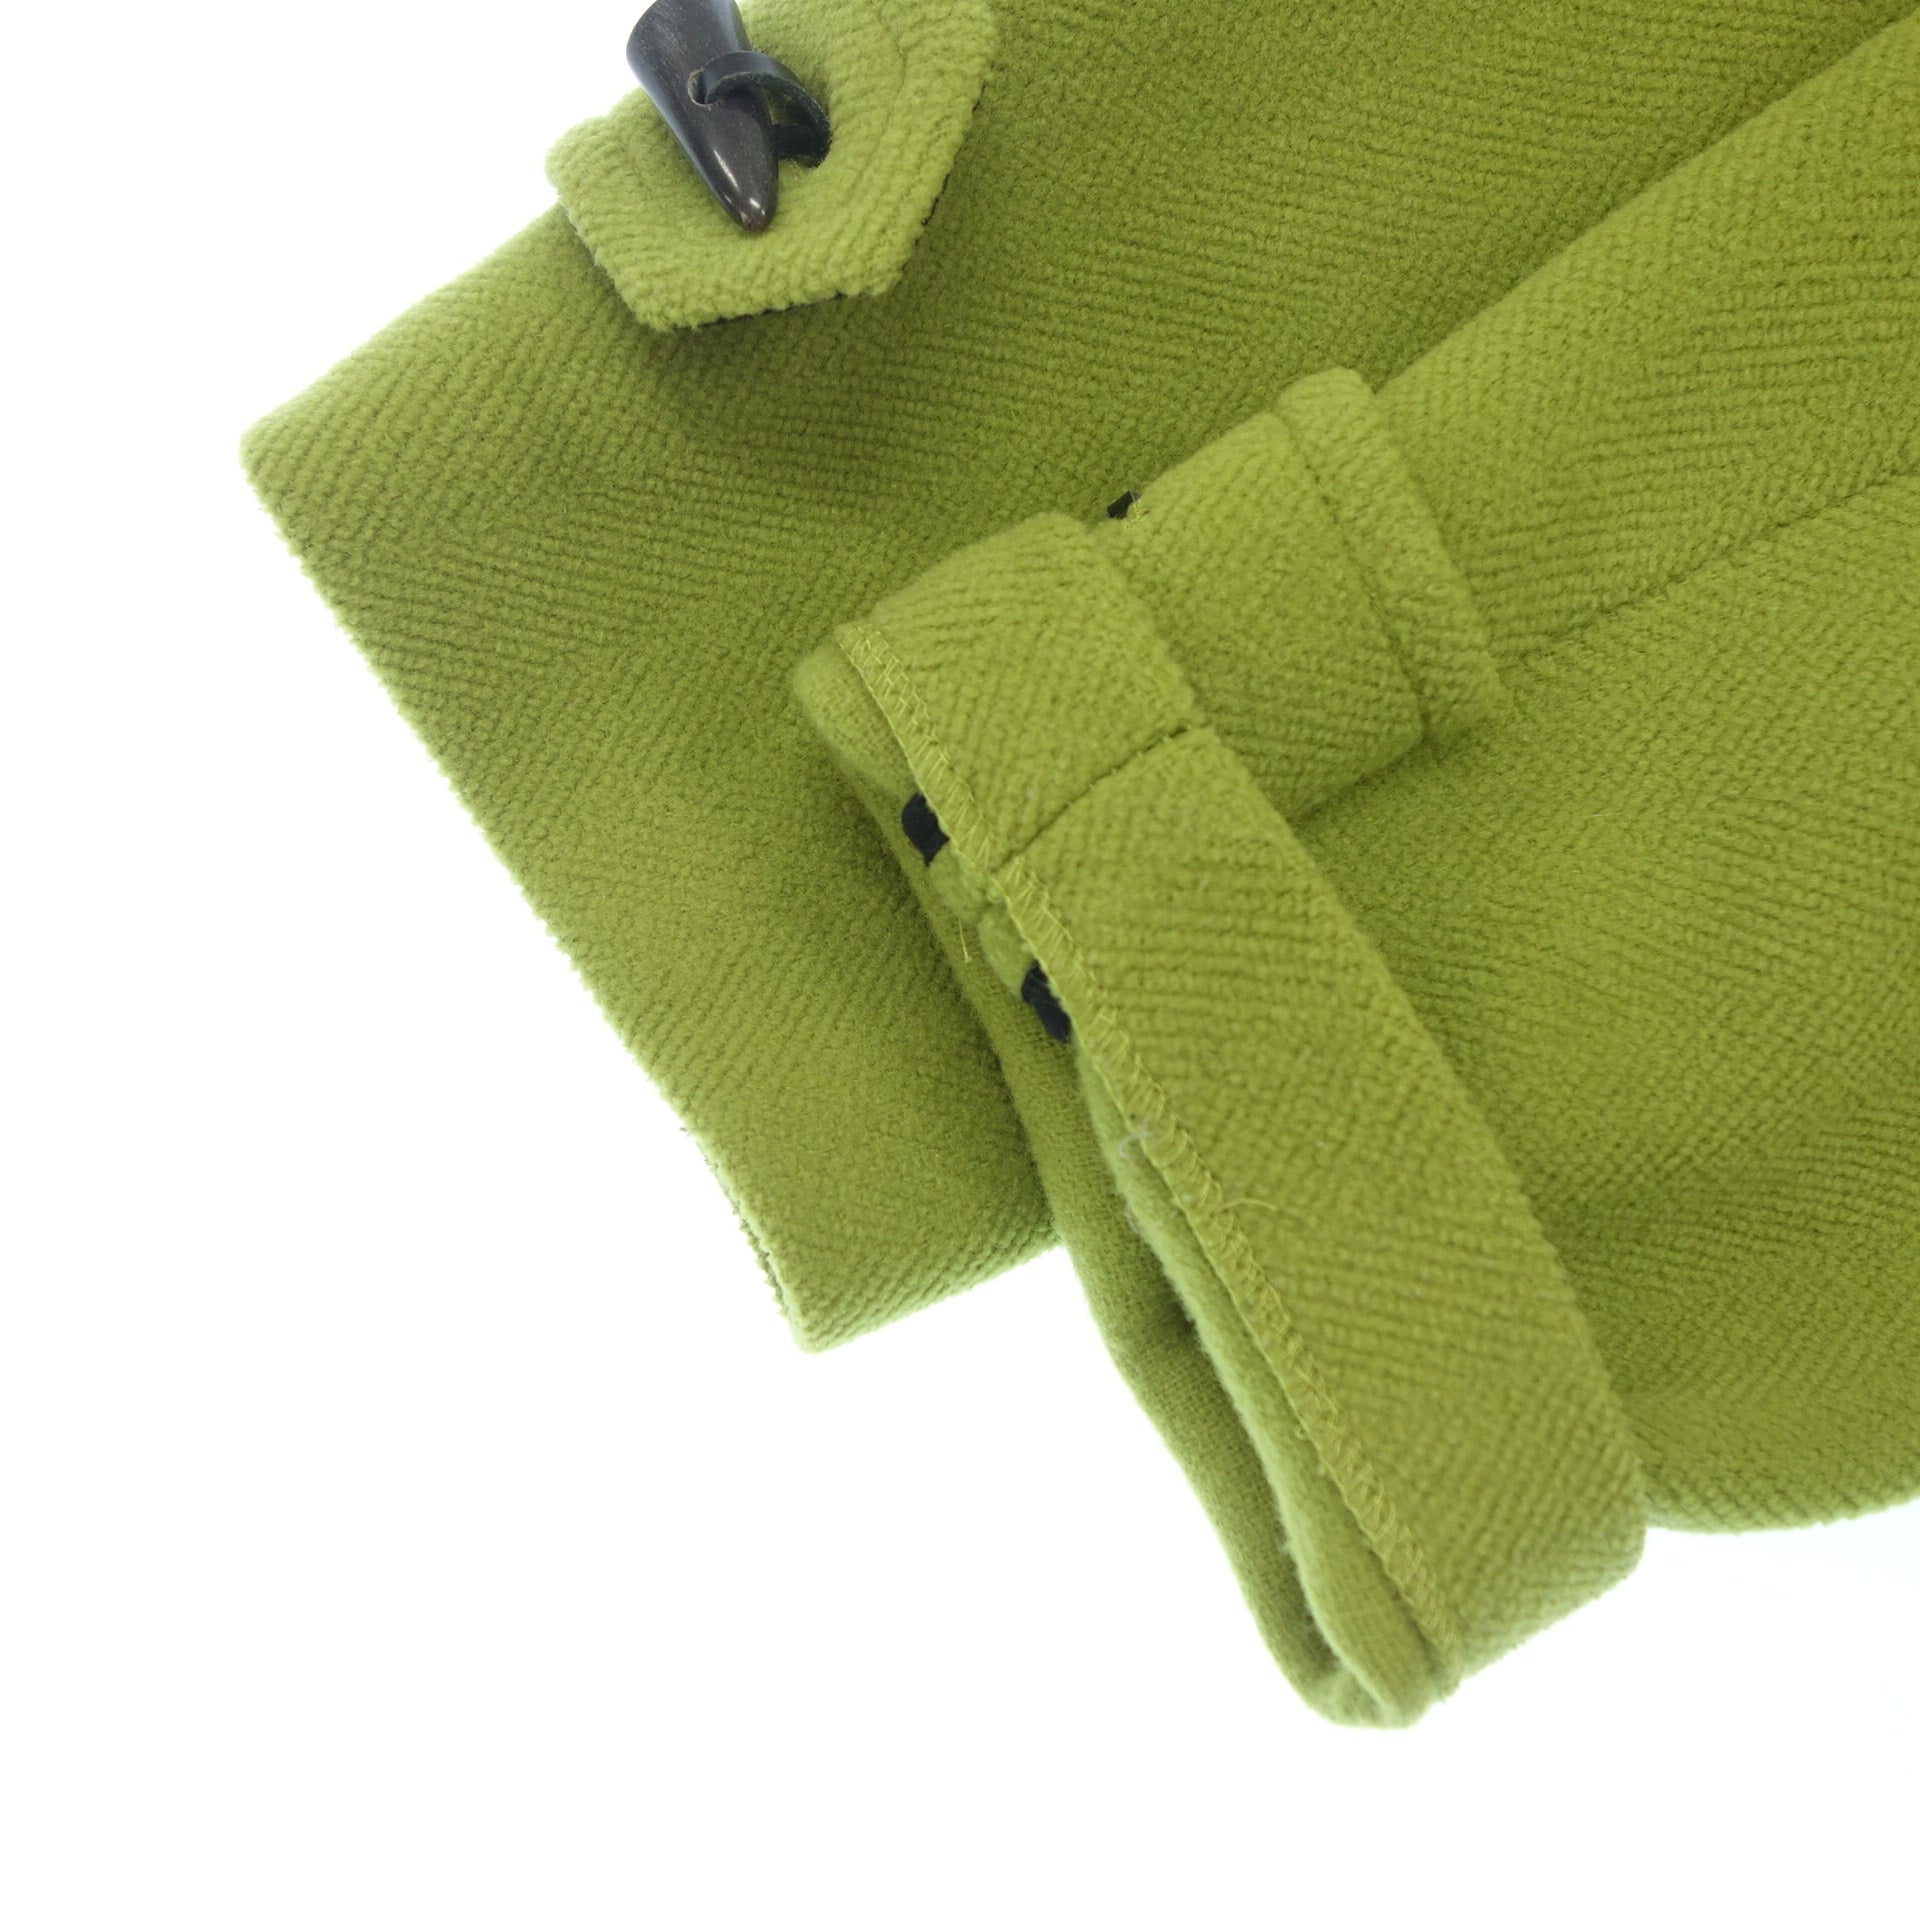 二手◆Burberry London 粗呢大衣 100% 羊毛纽扣 英国制造 女式 绿色 S 码 BURBERRY LONDON [AFA11]